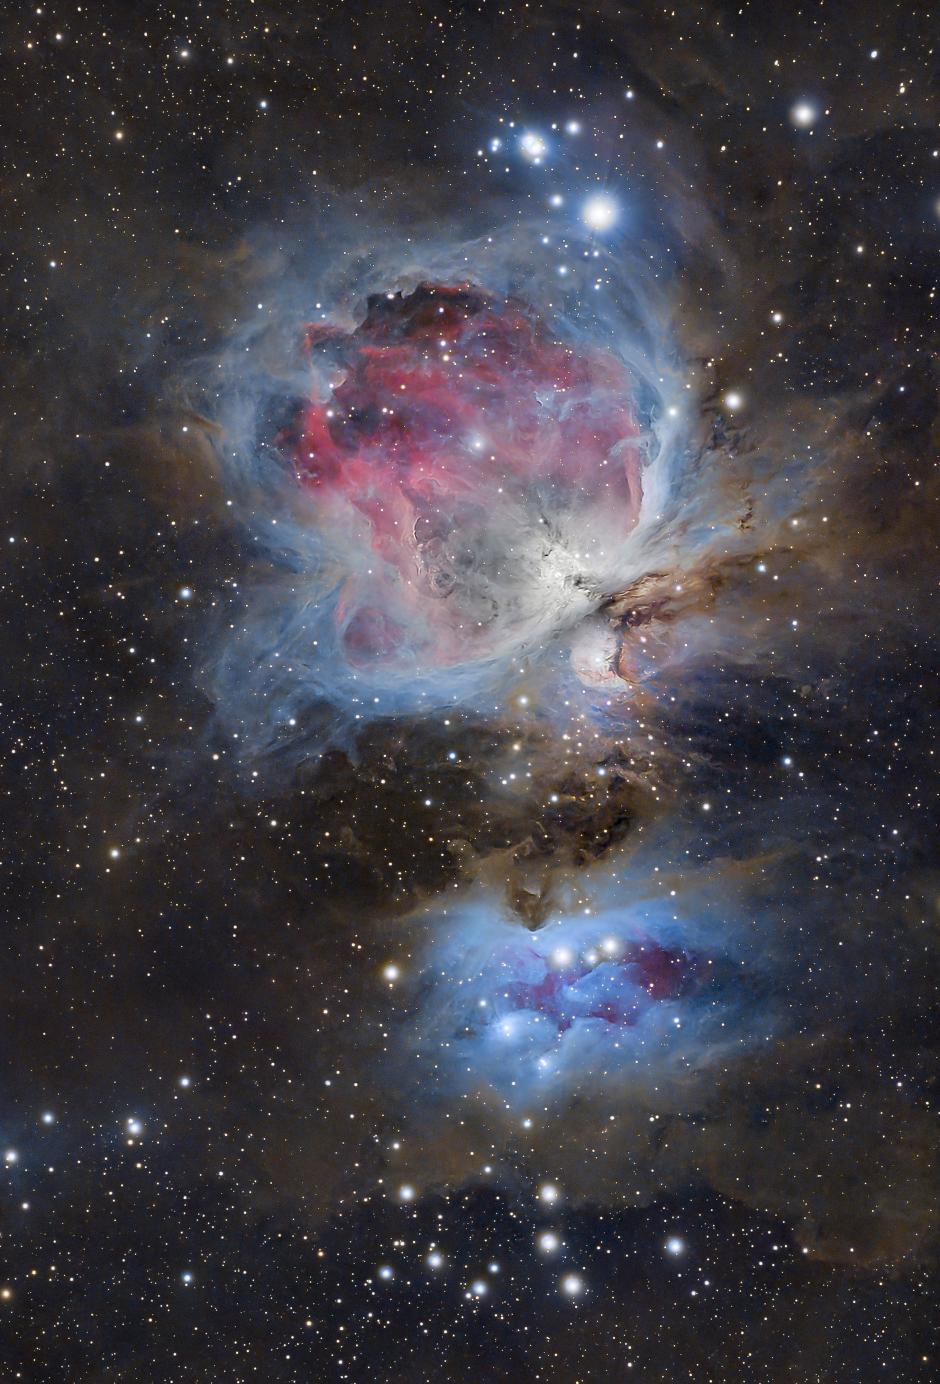 Imagen compuesta por la integración de 3 horas de exposiciones fotográficas que muestra las nebulosas del hombre corriendo (i) a unos 1.600 años luz de distancia y la nebulosa de Orión (M42) a unos 1.350 años luz de distancia. Ambas están situadas en la zona conocida como la espada de la constelación de Orión desde la localidad cántabra de La Hayuela